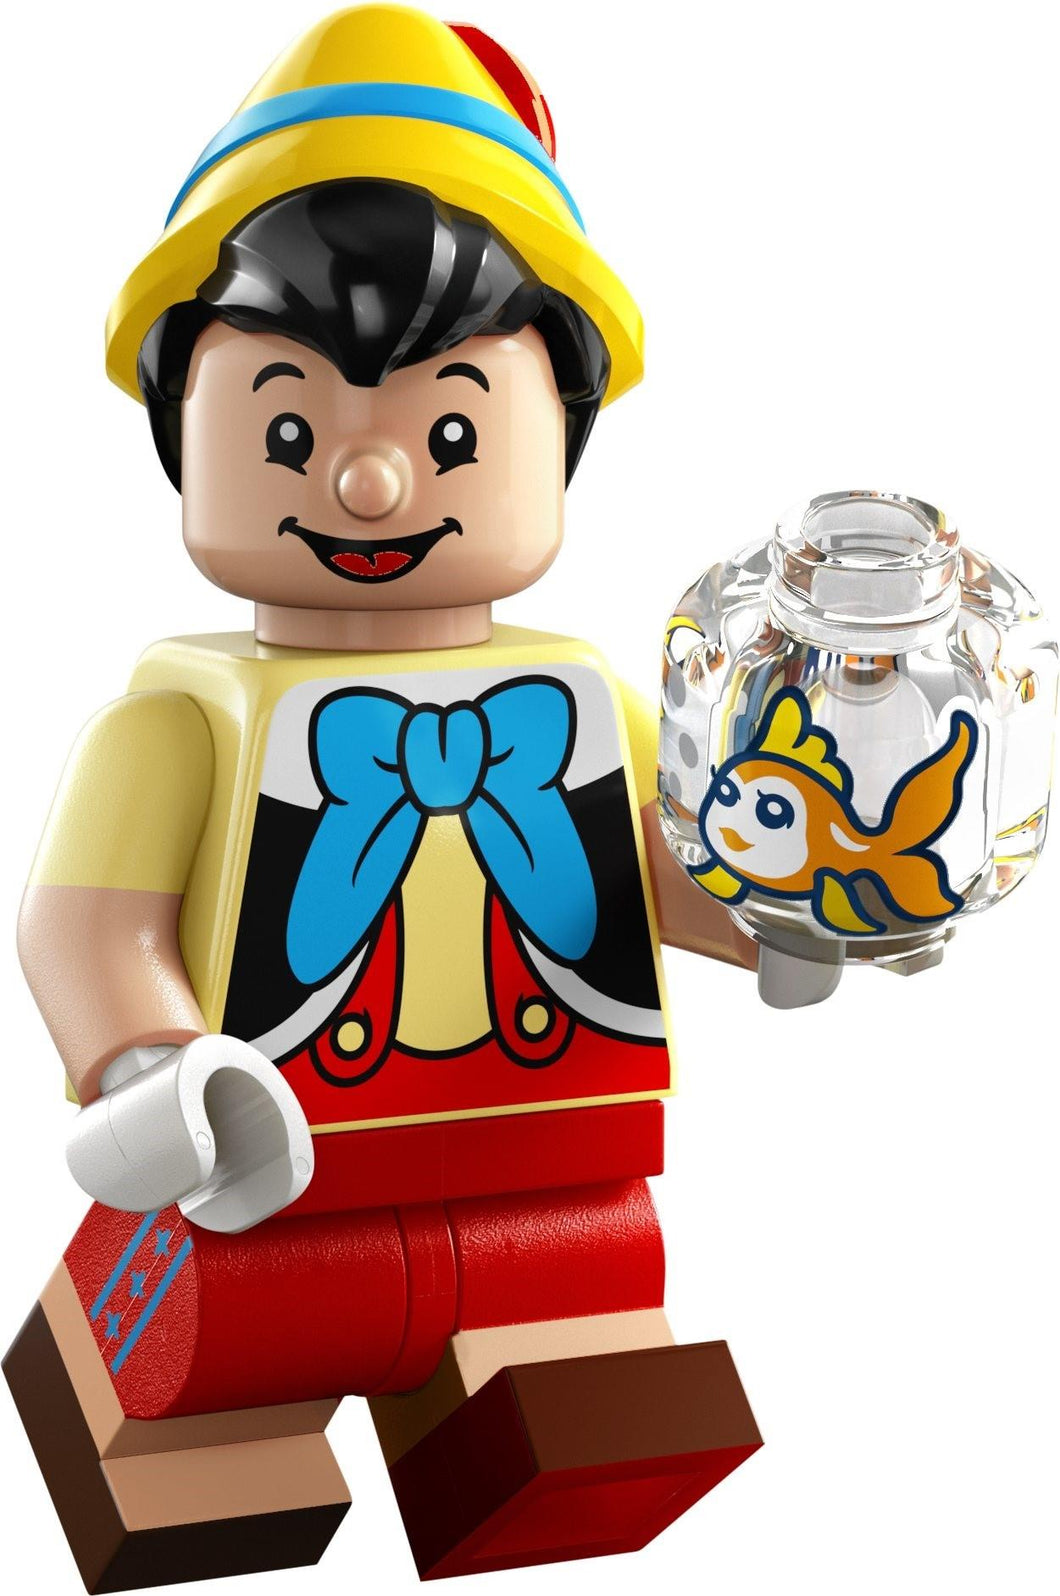 LEGO 71038 Disney 100 Minifigures Series - Pinocchio